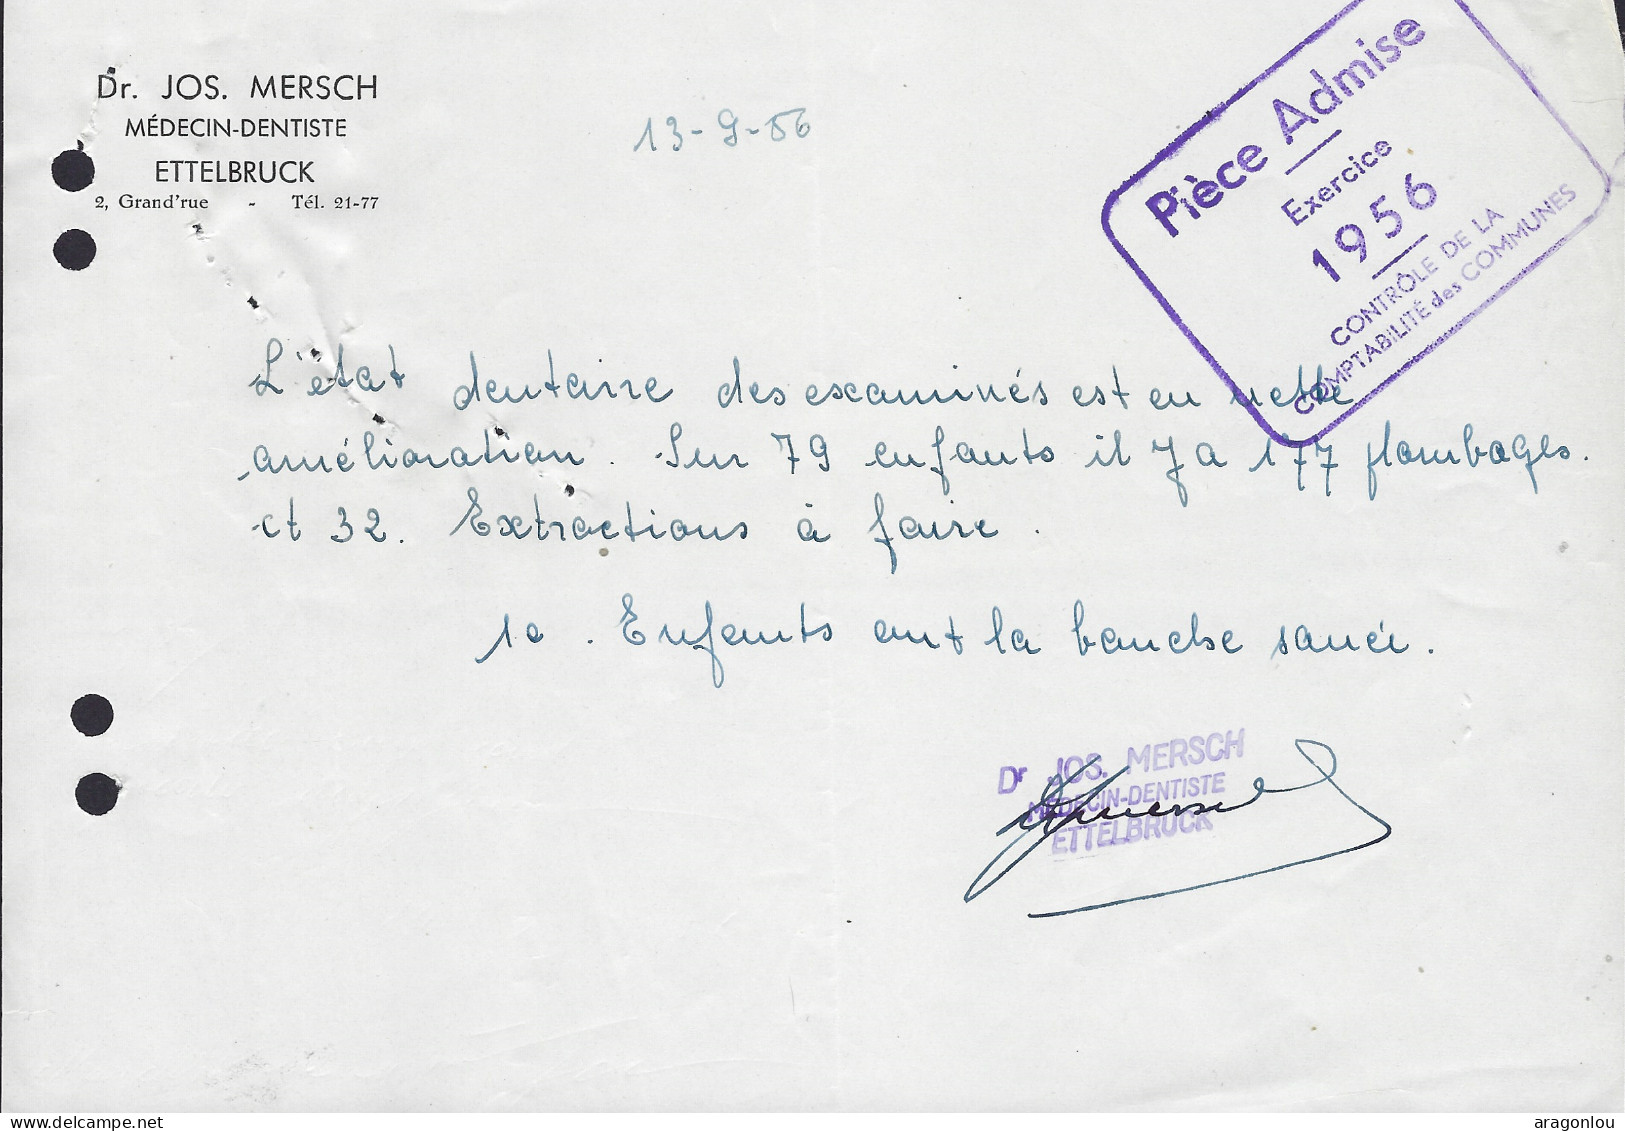 Luxembourg - Luxemburg - Facture -  Dr. JOS. MERSCH , MÉDECIN DENTISTE , ETTELBRUCK   1956 - Luxembourg